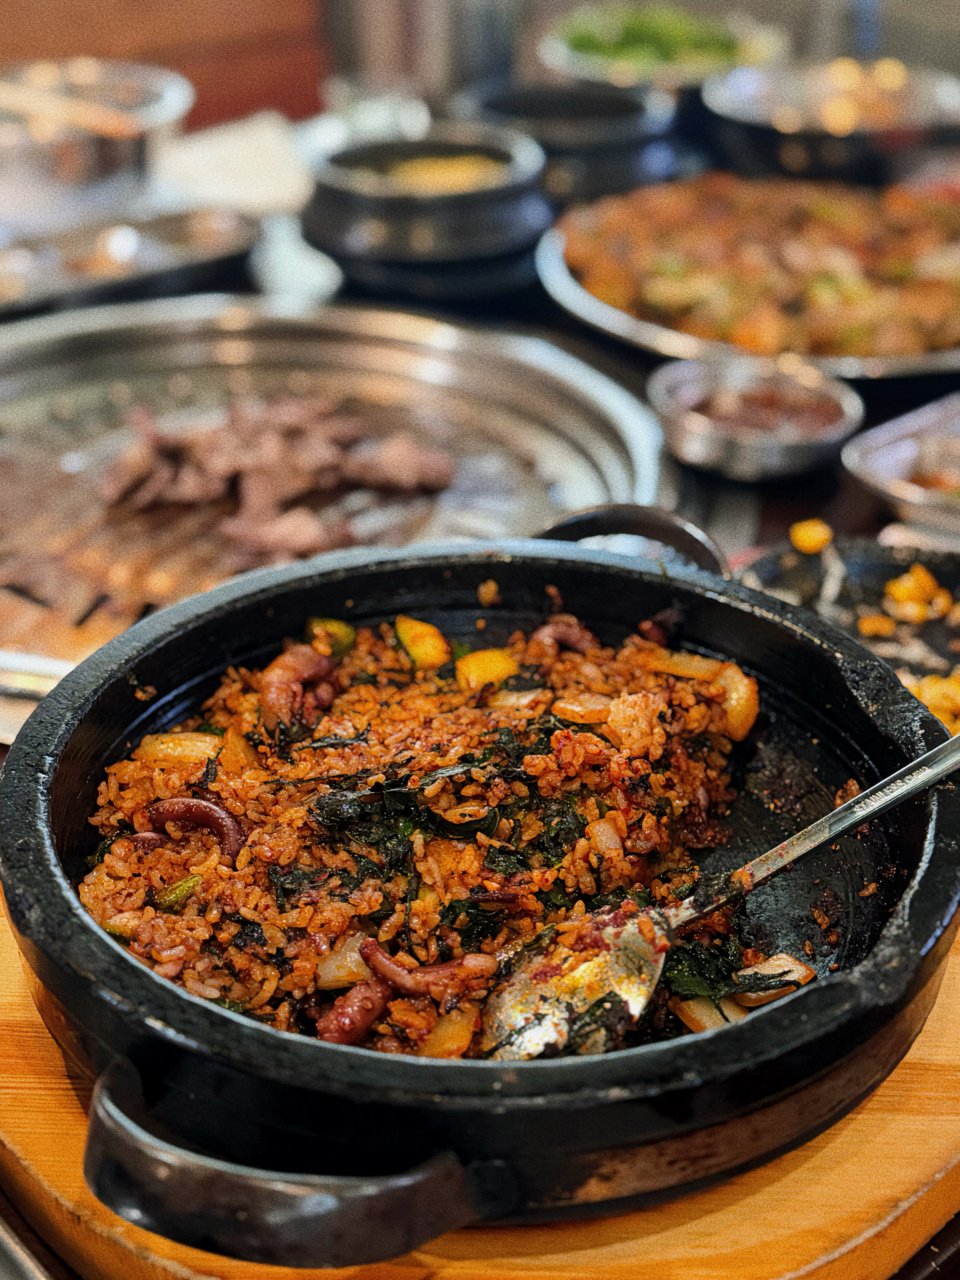 OC地区-宝藏韩国🇰🇷烤肉｜Yelp满分...